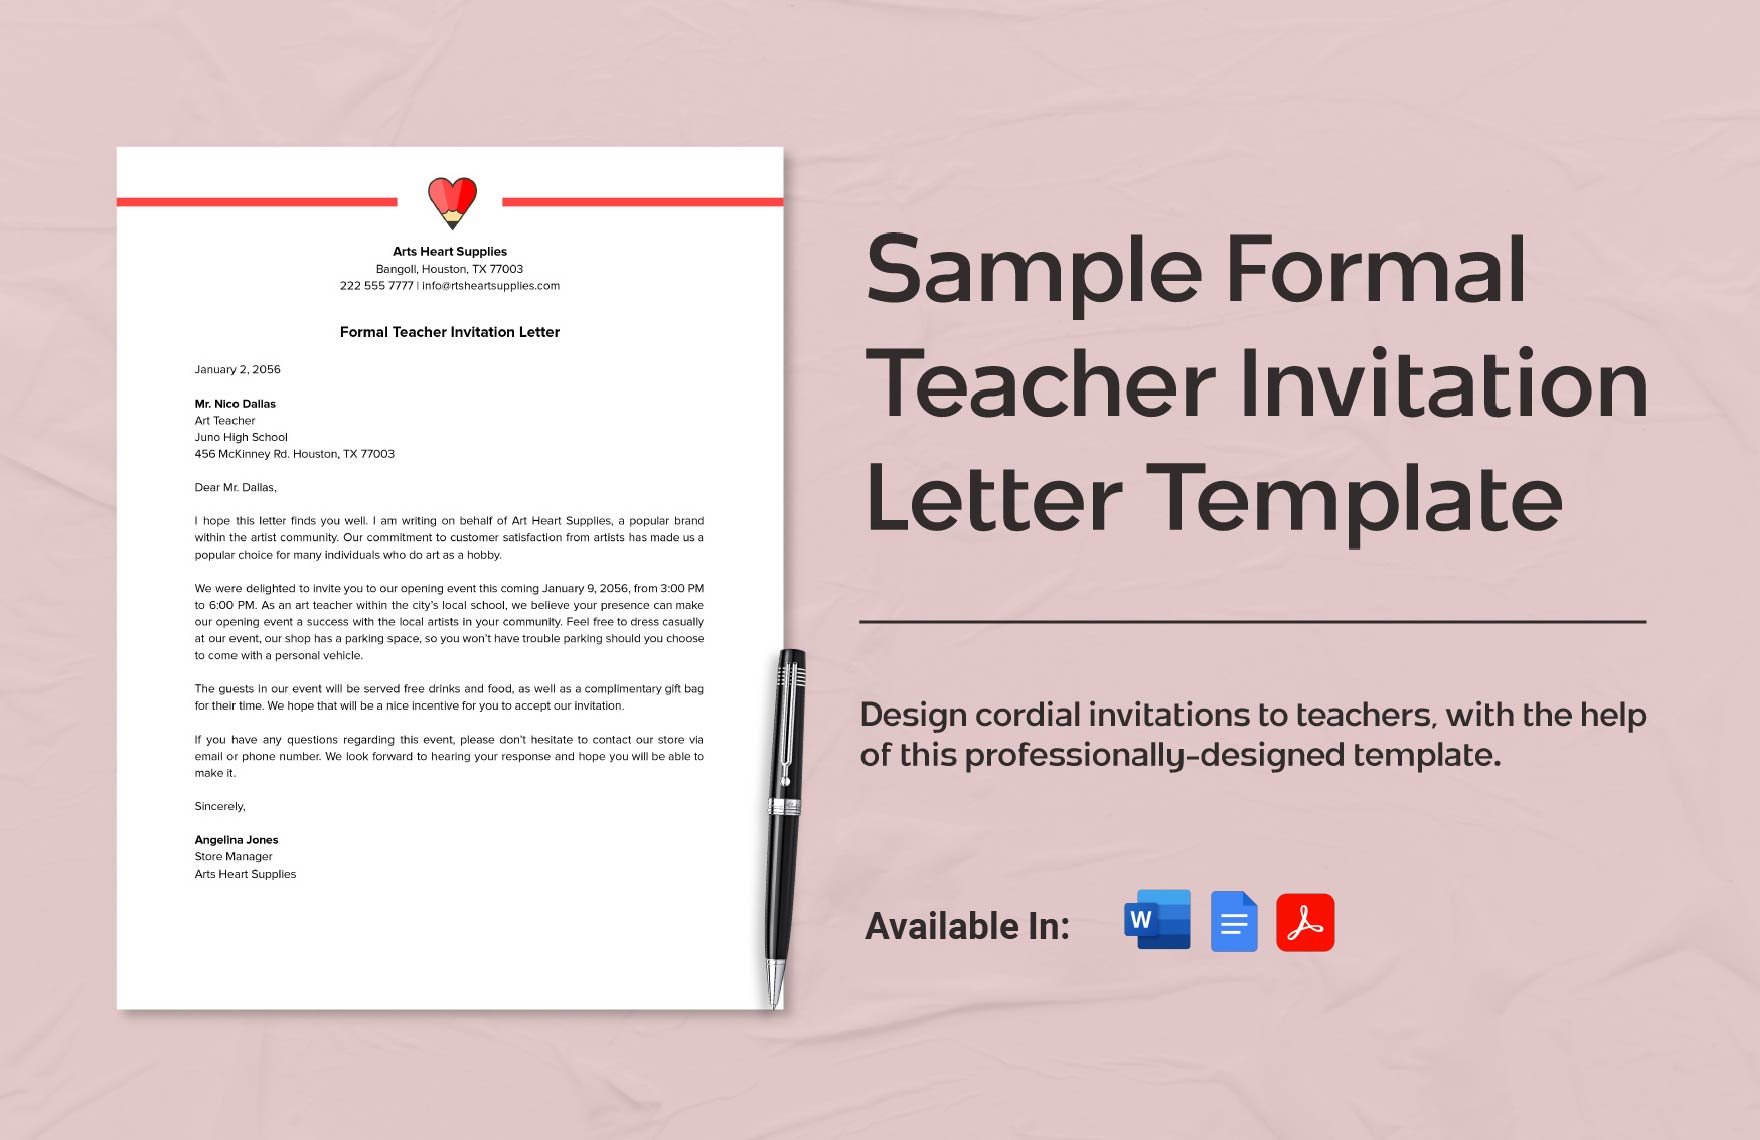 Sample Formal Teacher Invitation Letter Template